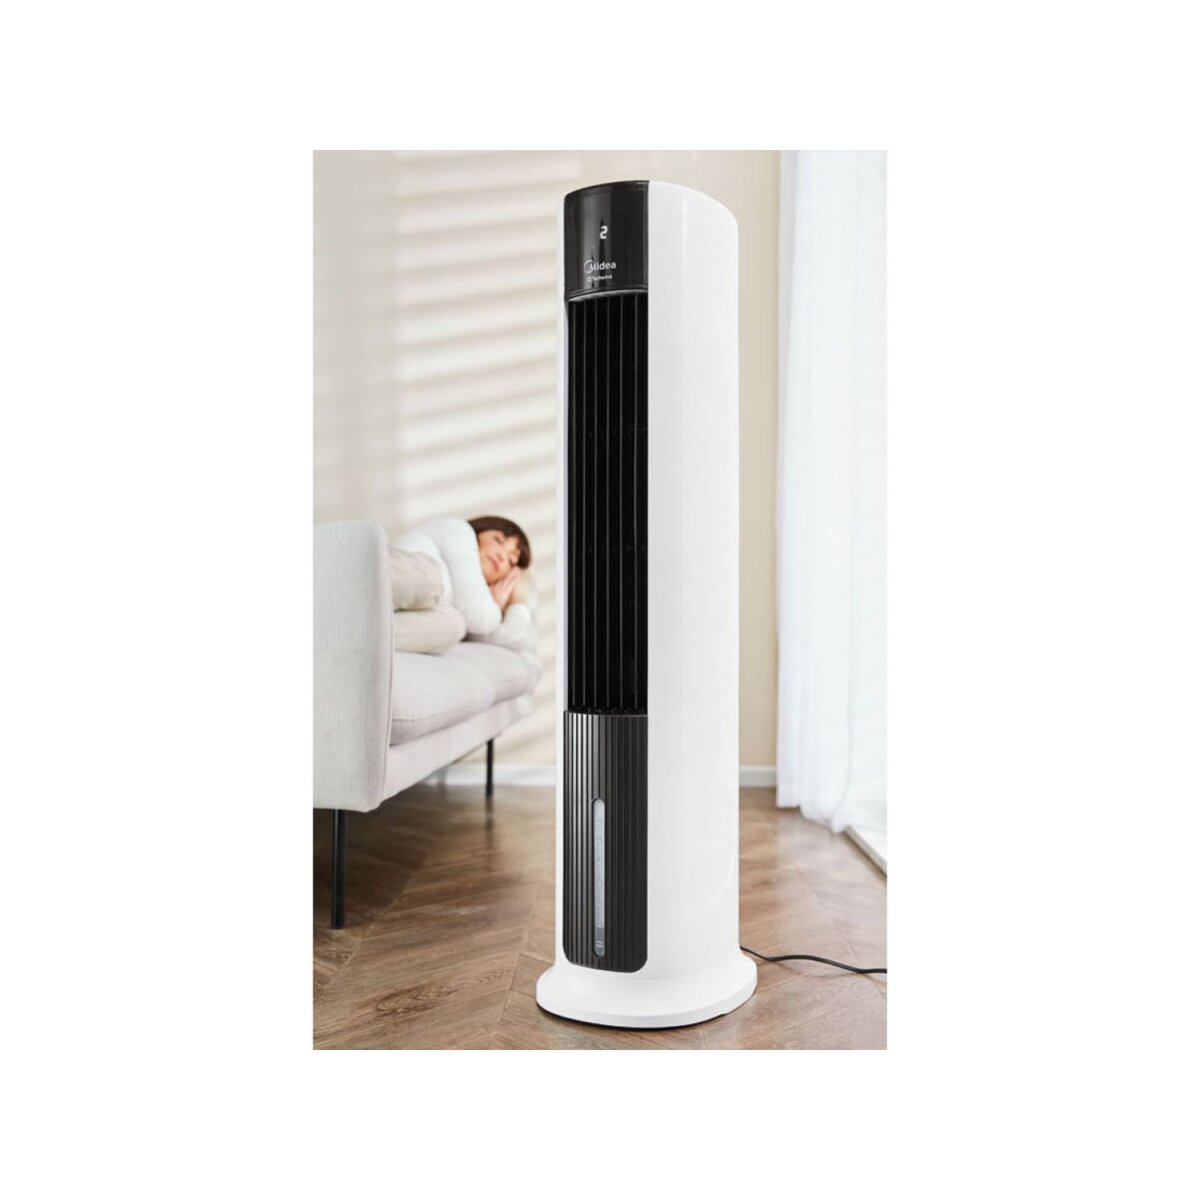 Comfee Luftkühler »Silent Air Cooler«, mit Timerfunktion - B-Ware sehr gut,  128,99 € | Ventilatoren